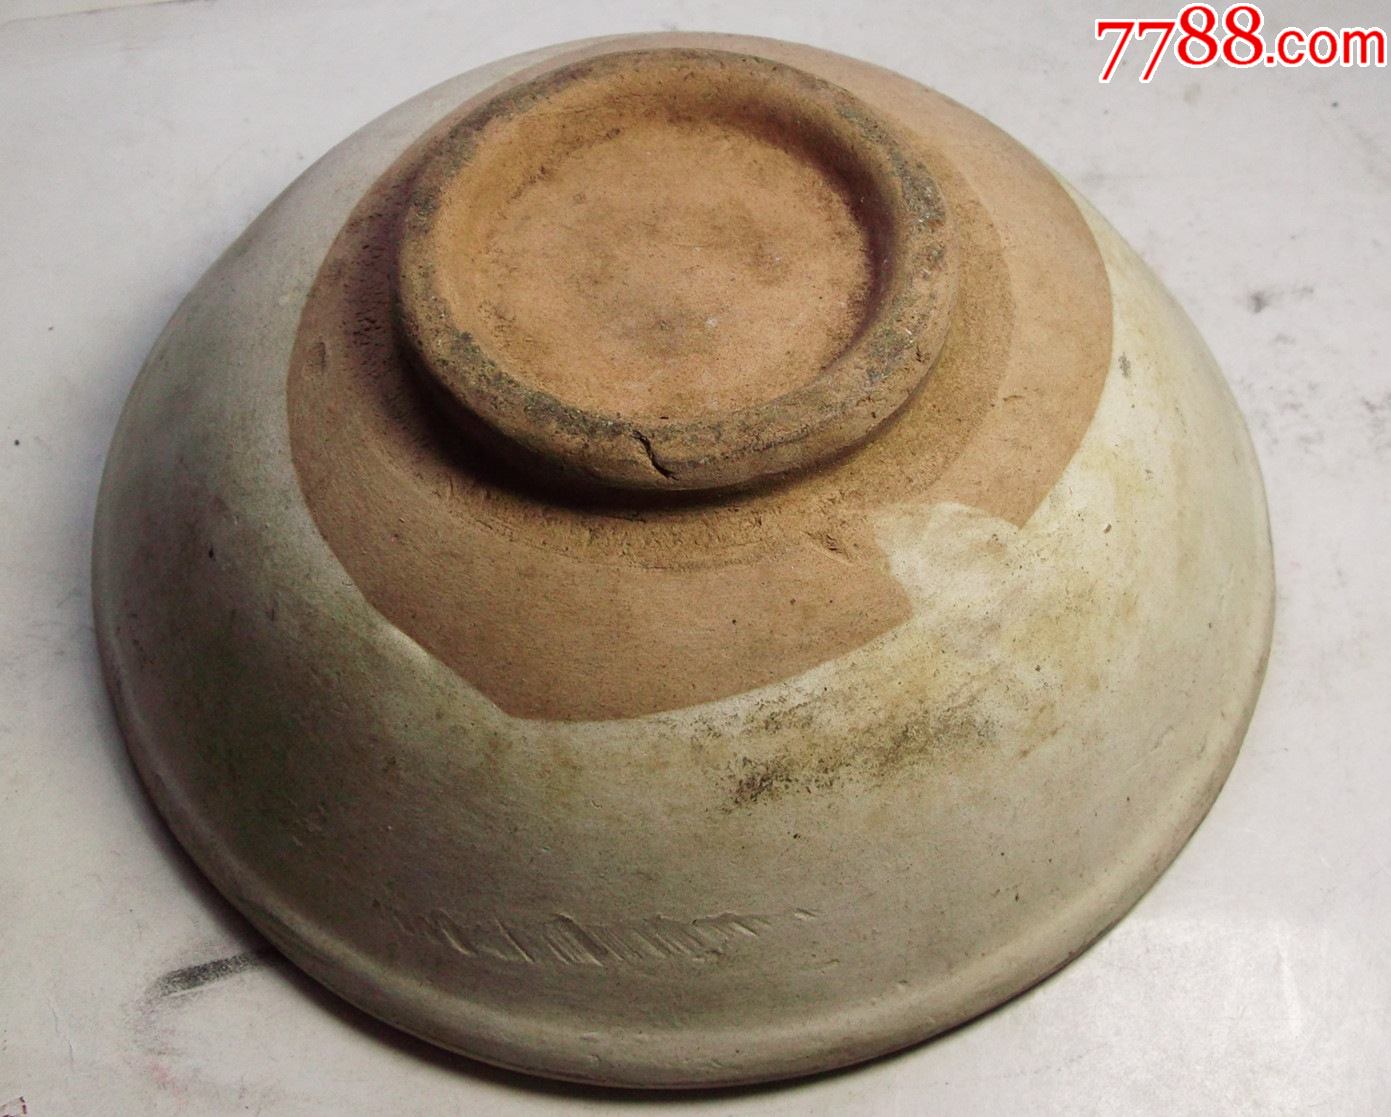 古代白陶碗尺寸:15.3x15.3x6cm-价格:24.0000元-au-白